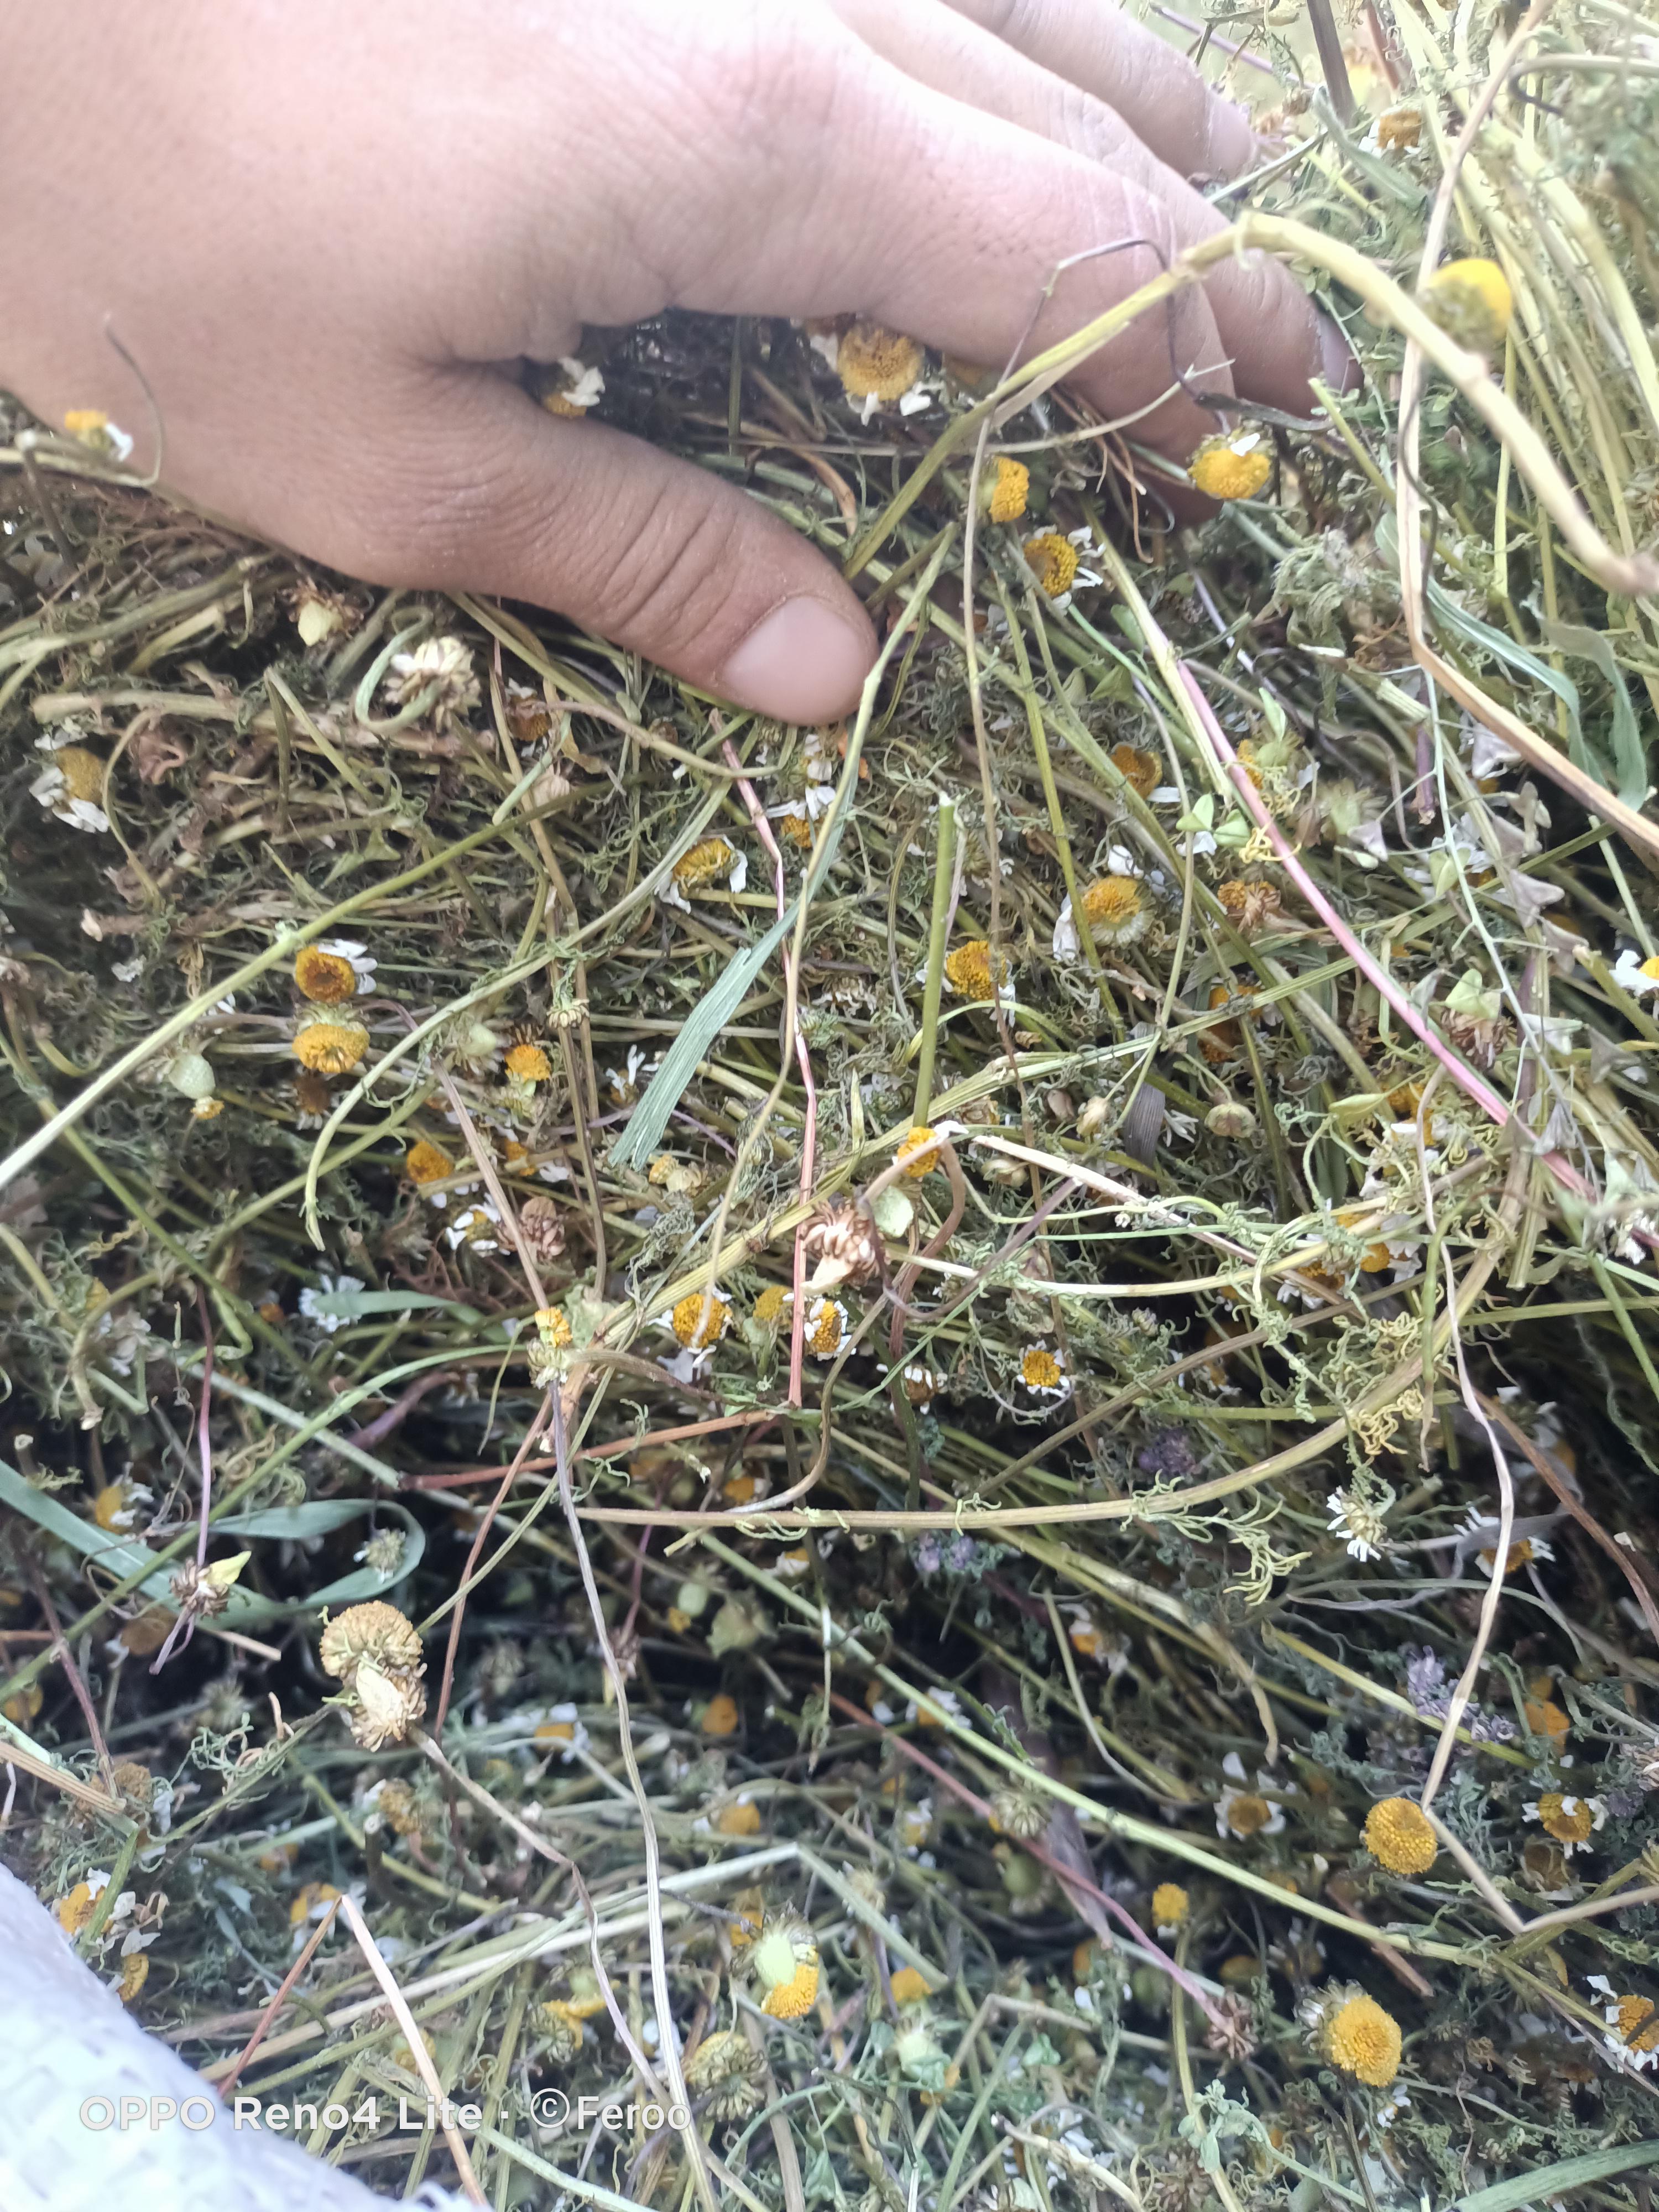 Papatya - Üretici Ferhat Yıldırım 17 tl fiyat ile 1.000 kilogram papatya  satmak istiyor